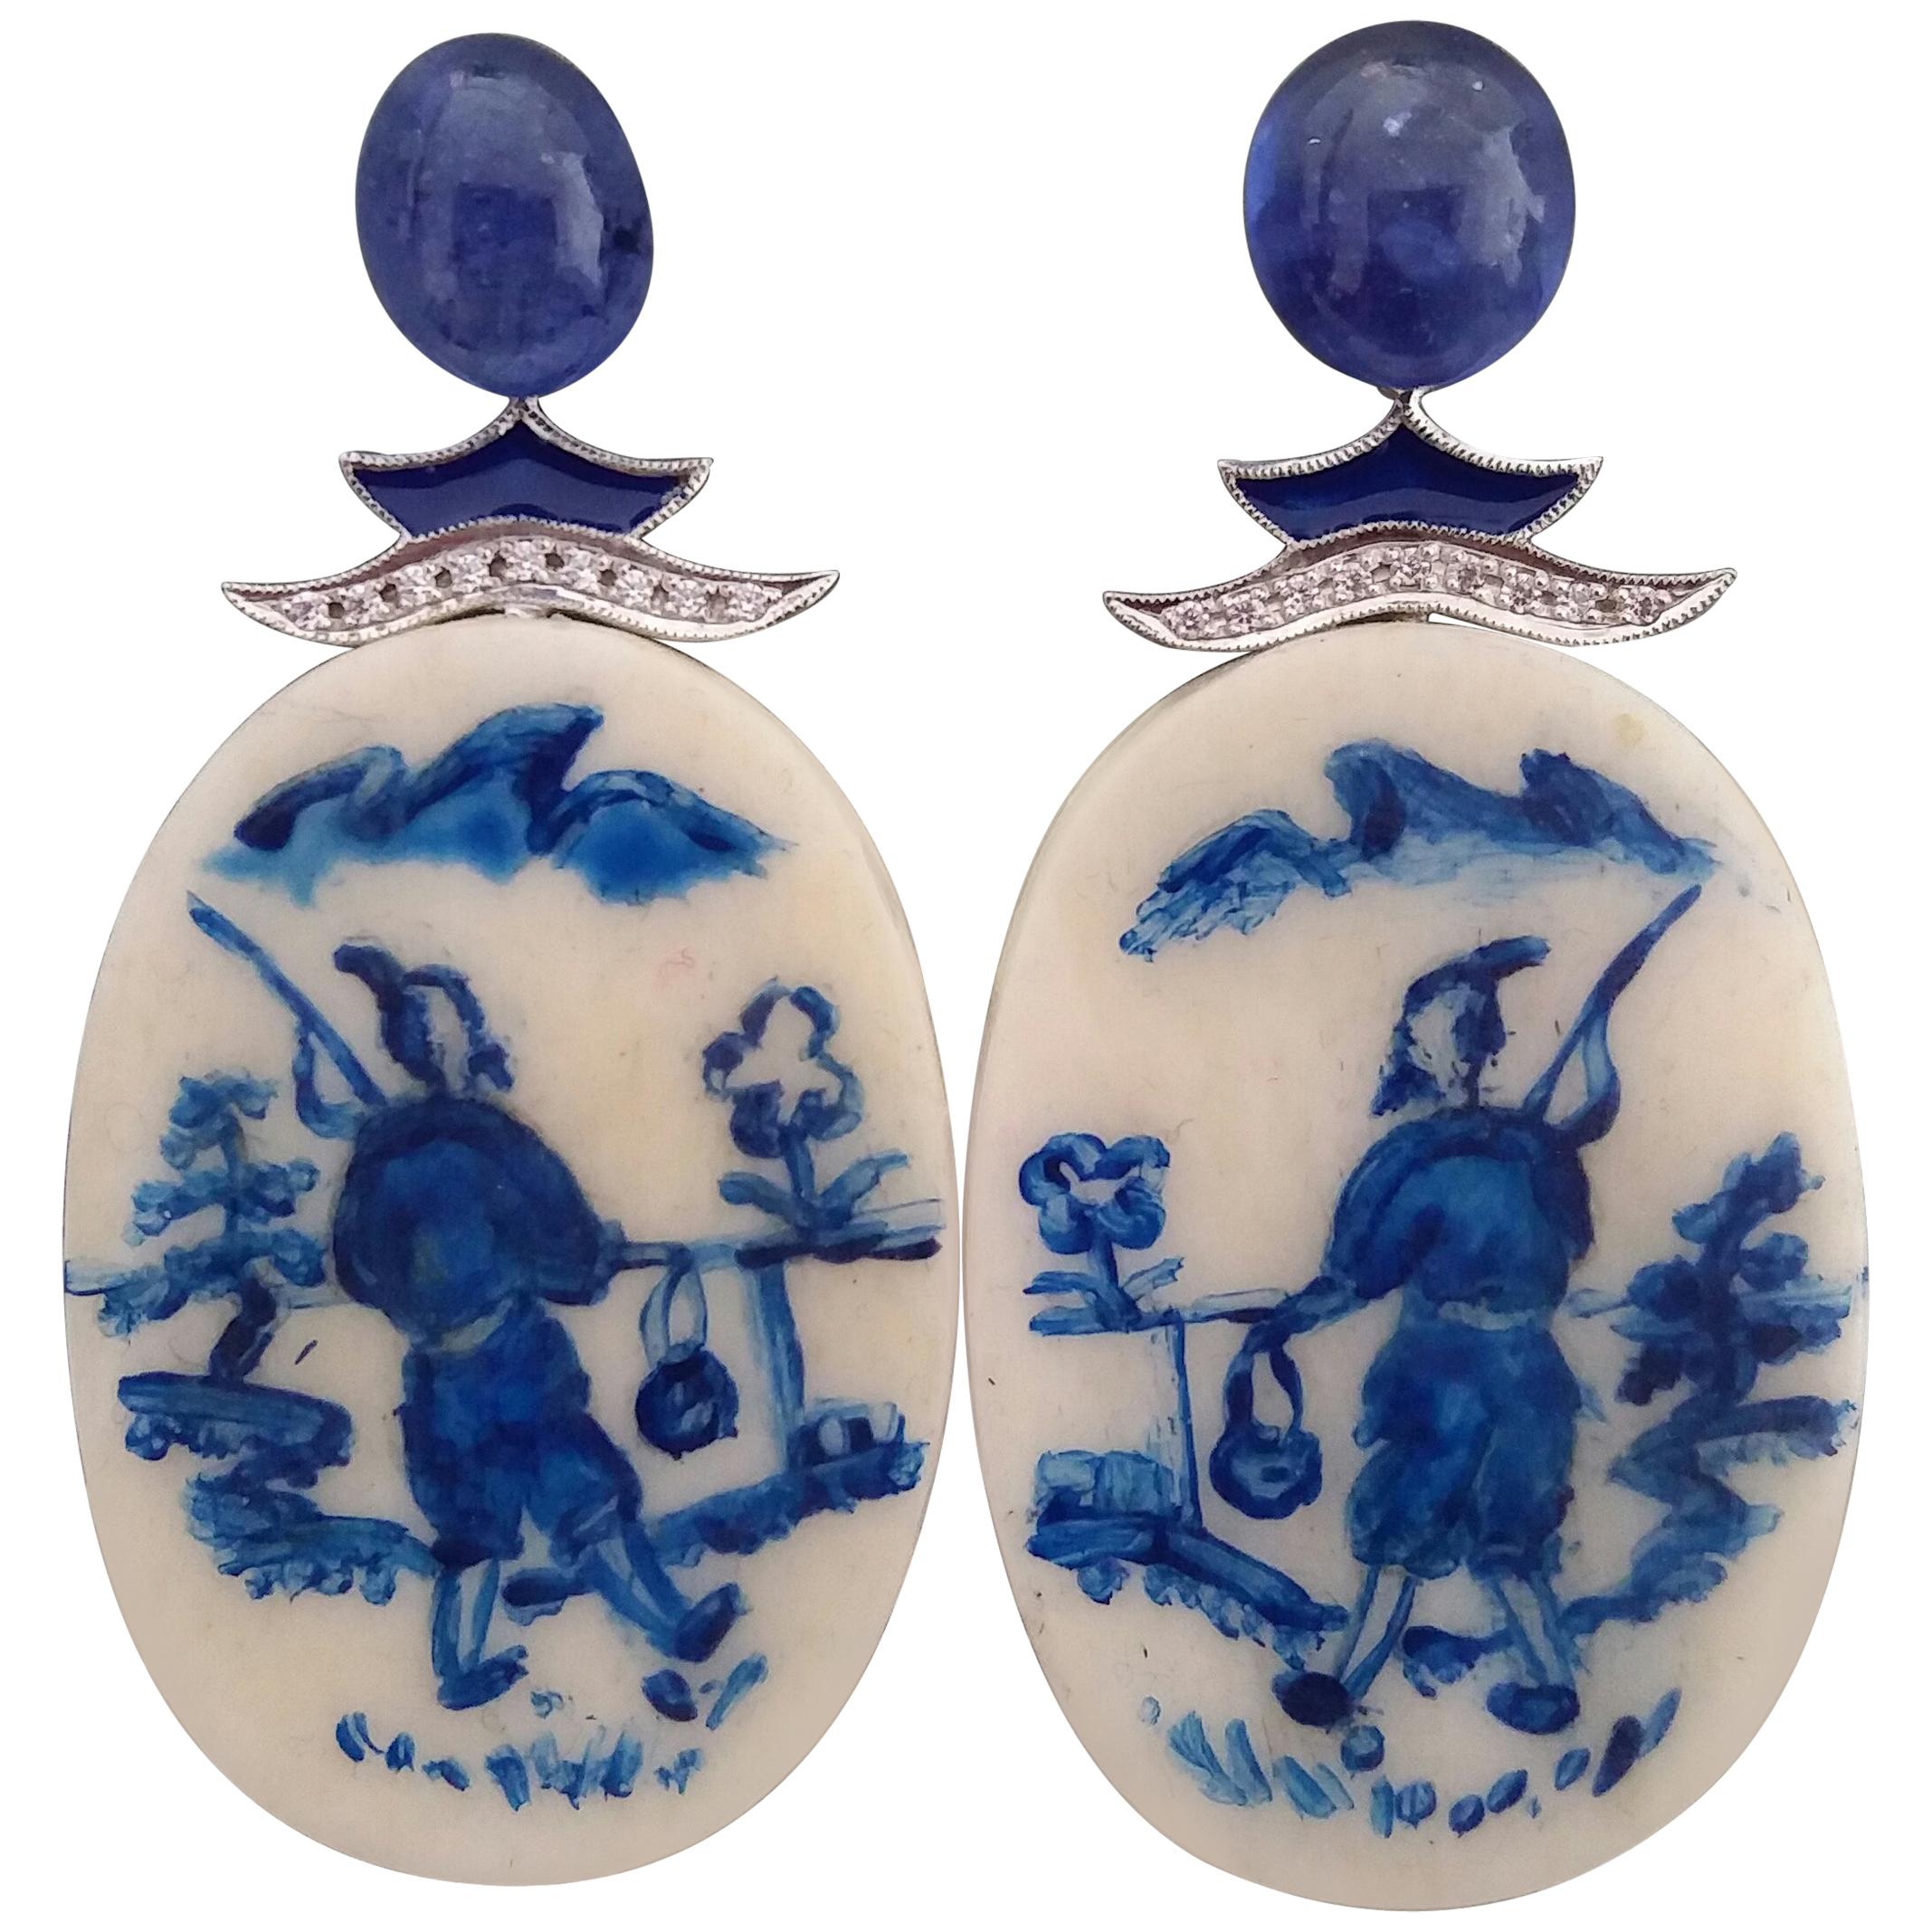 Boucles d'oreilles chinoises vintage en forme d'os de vache peintes à la main, en or, diamants, saphirs et émail